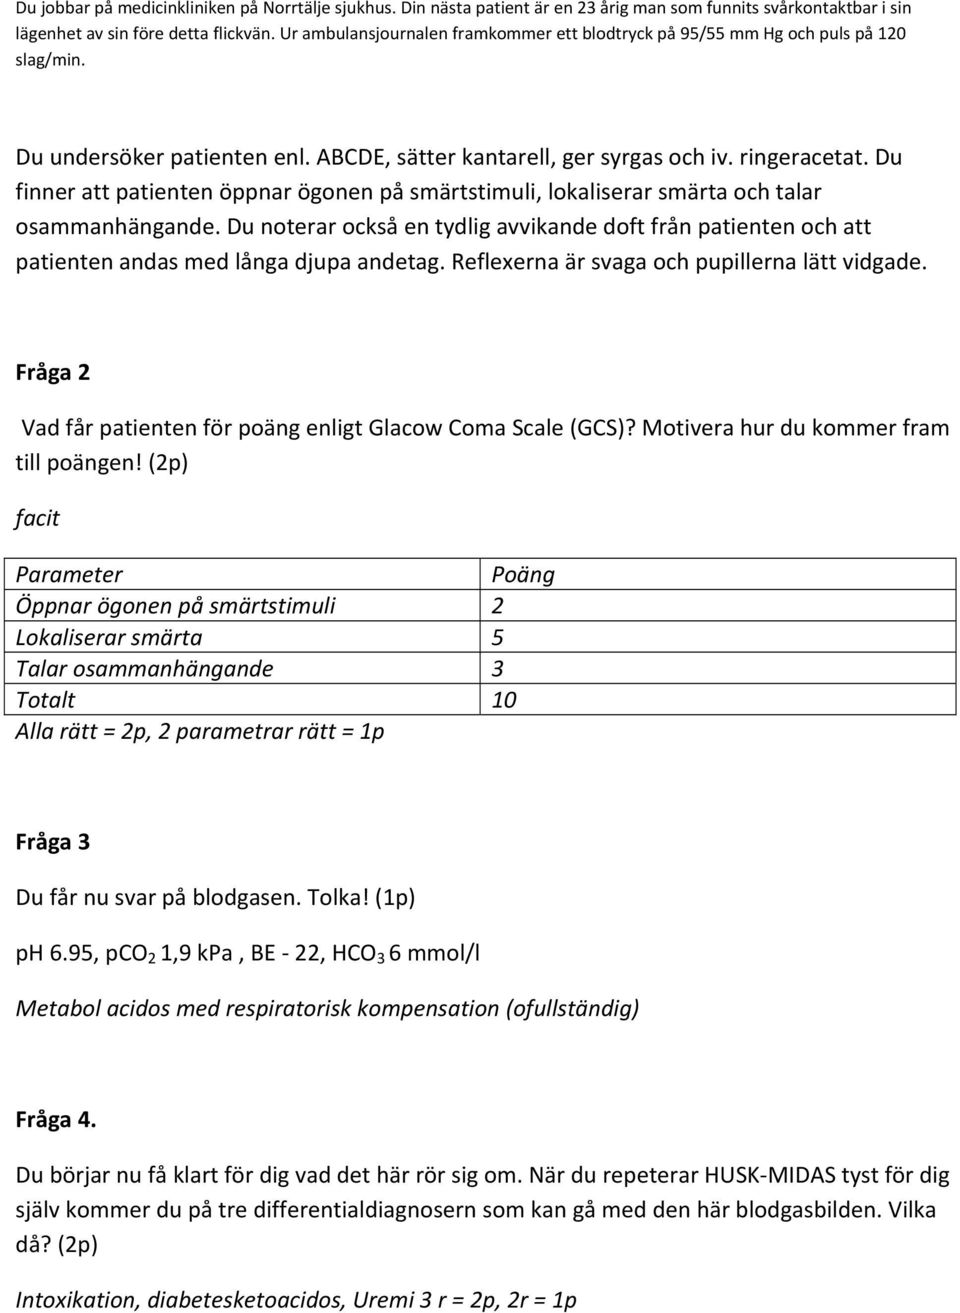 Fråga 2 Vad får patienten för poäng enligt Glacow Coma Scale (GCS)? Motivera hur du kommer fram till poängen!